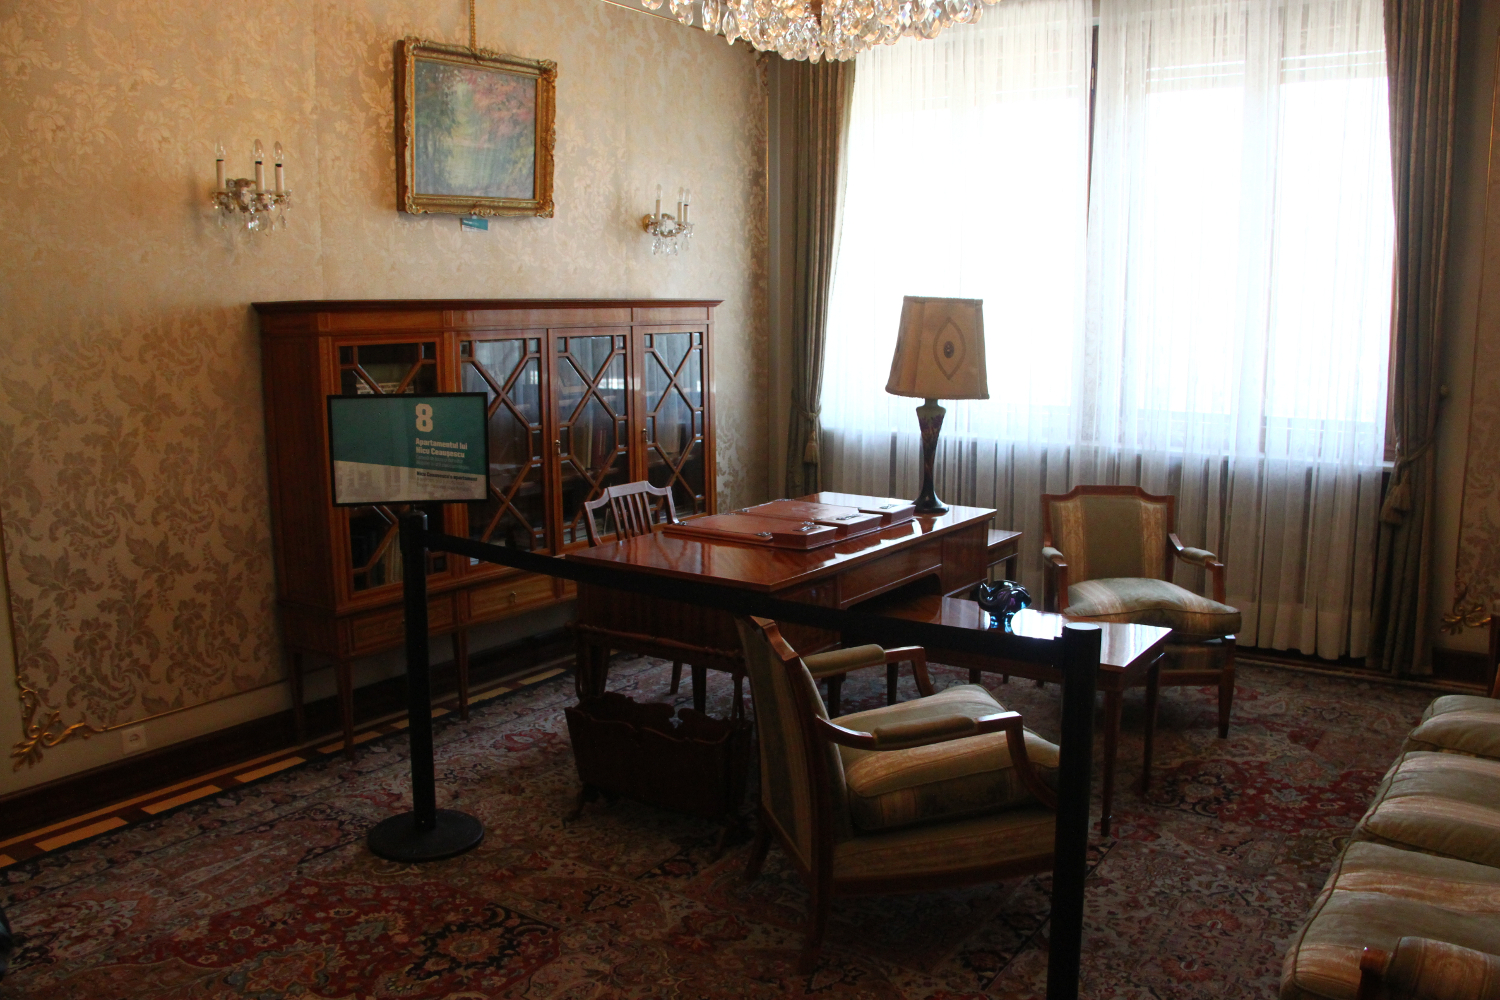 Primaverii (Spring) Palace, Ceausescu’s private residence - Nicu Ceausescu's office